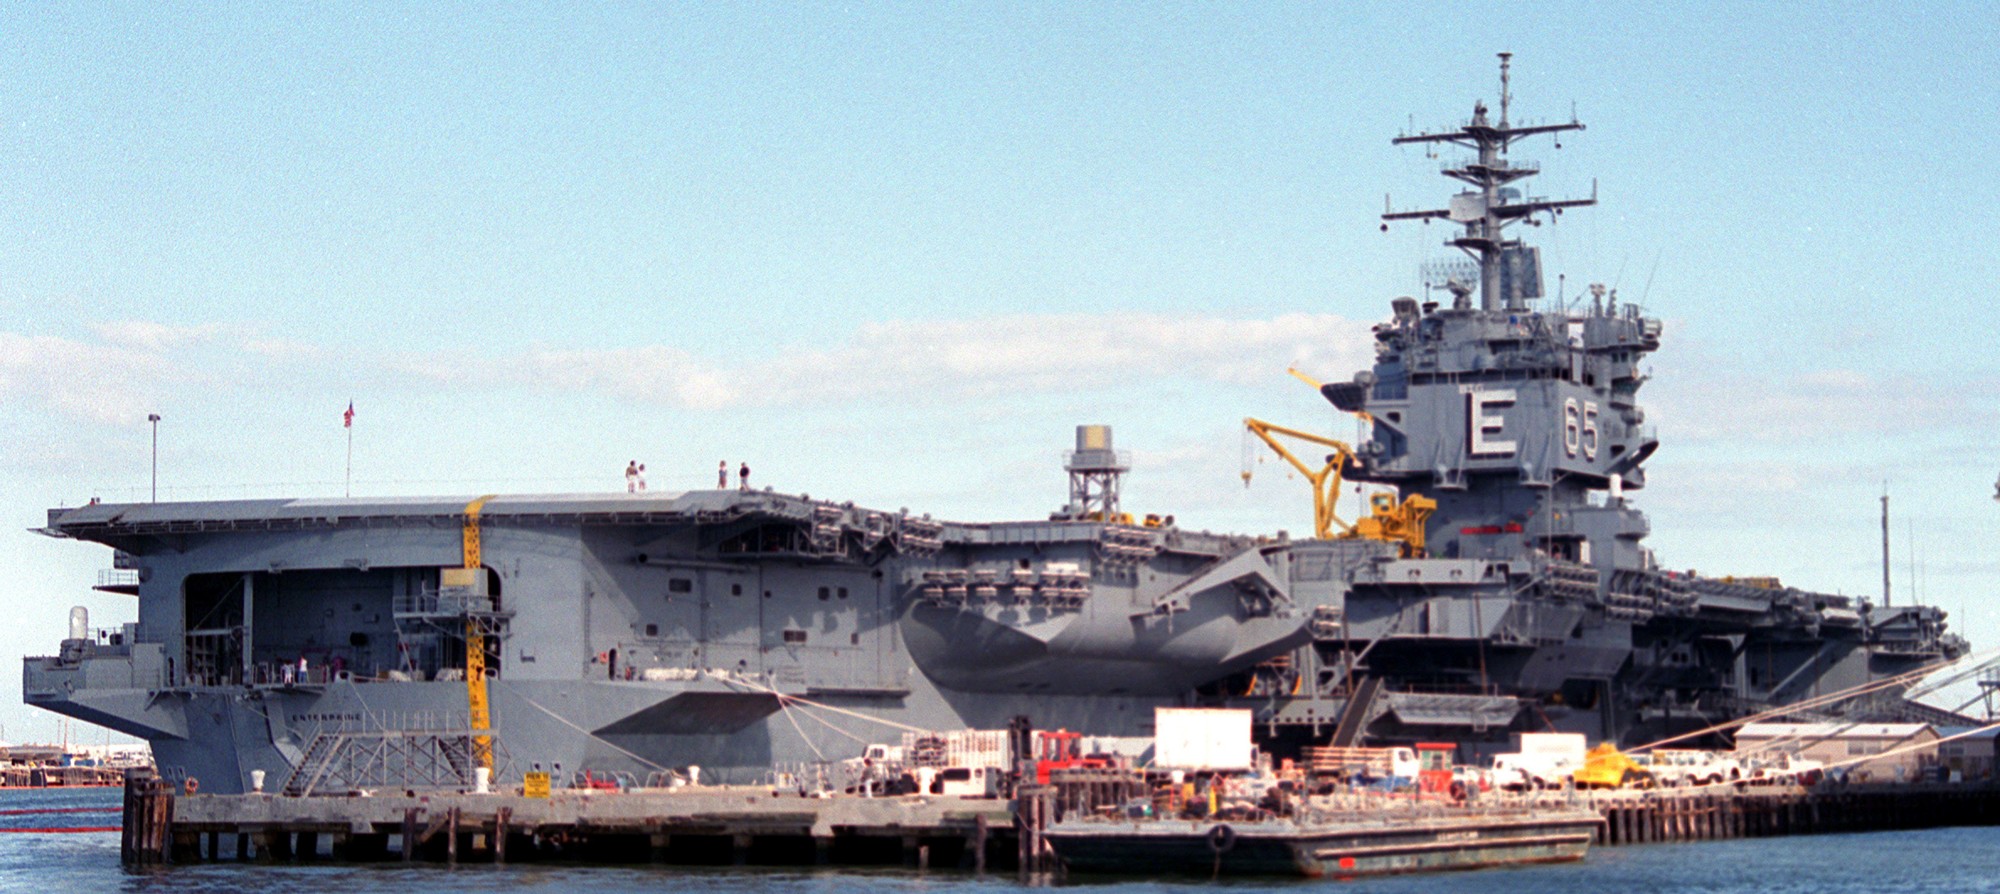 cvn-65 uss enterprise aircraft carrier us navy norfolk virginia 91